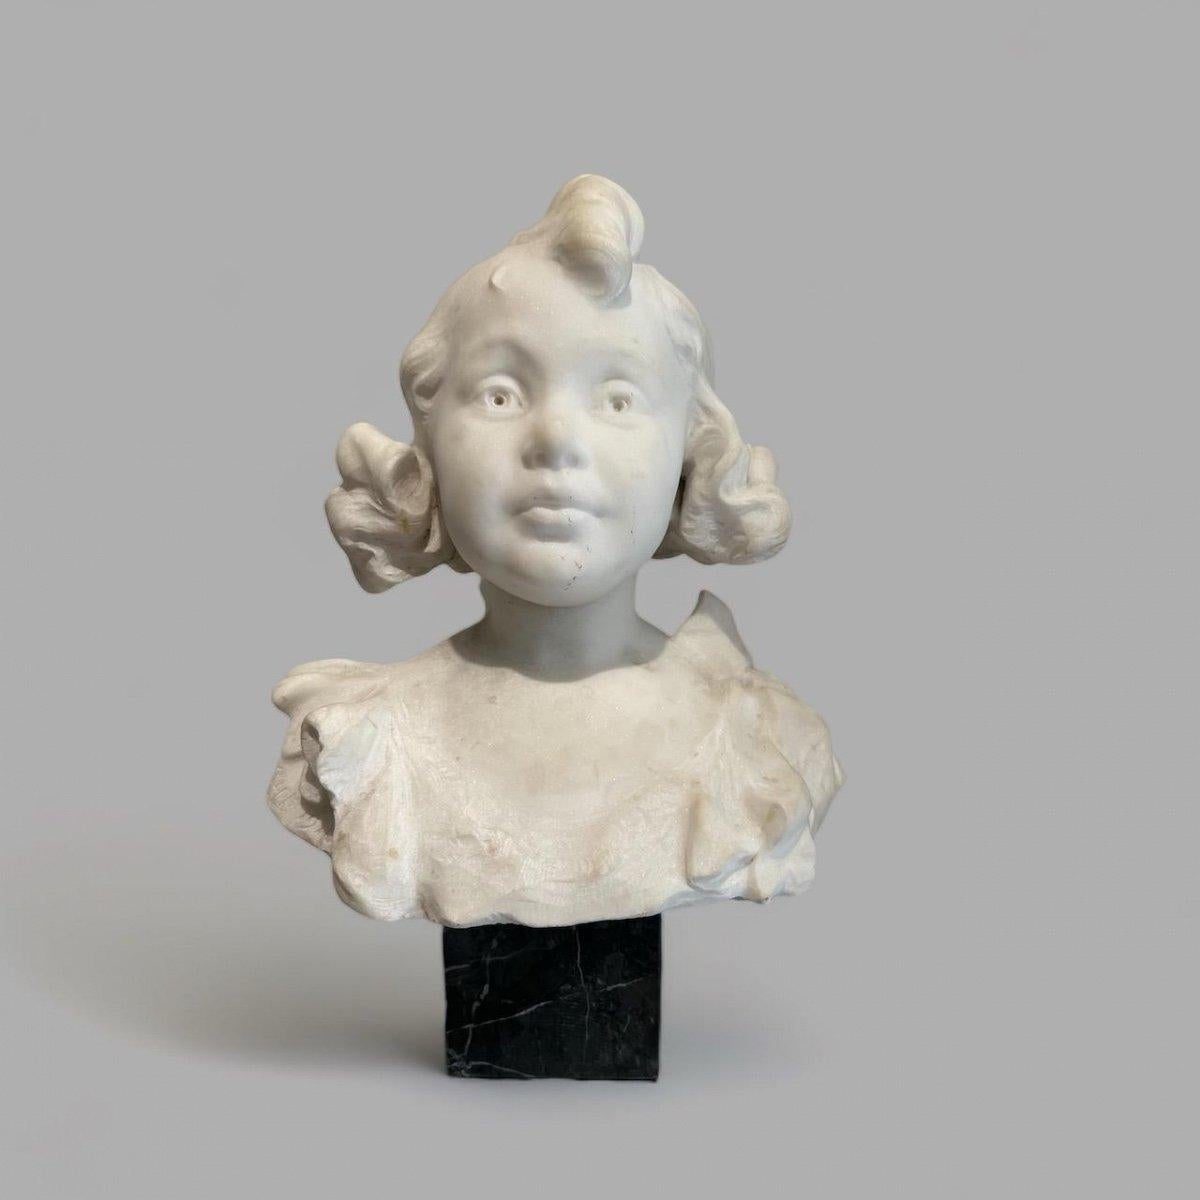 Ce buste d'une jeune fille en marbre de Carrare datant de la fin du XIXe siècle capture magnifiquement l'innocence et le charme exprimés sur le visage du sujet. La sculpture fait preuve d'une remarquable expressivité, particulièrement évidente dans